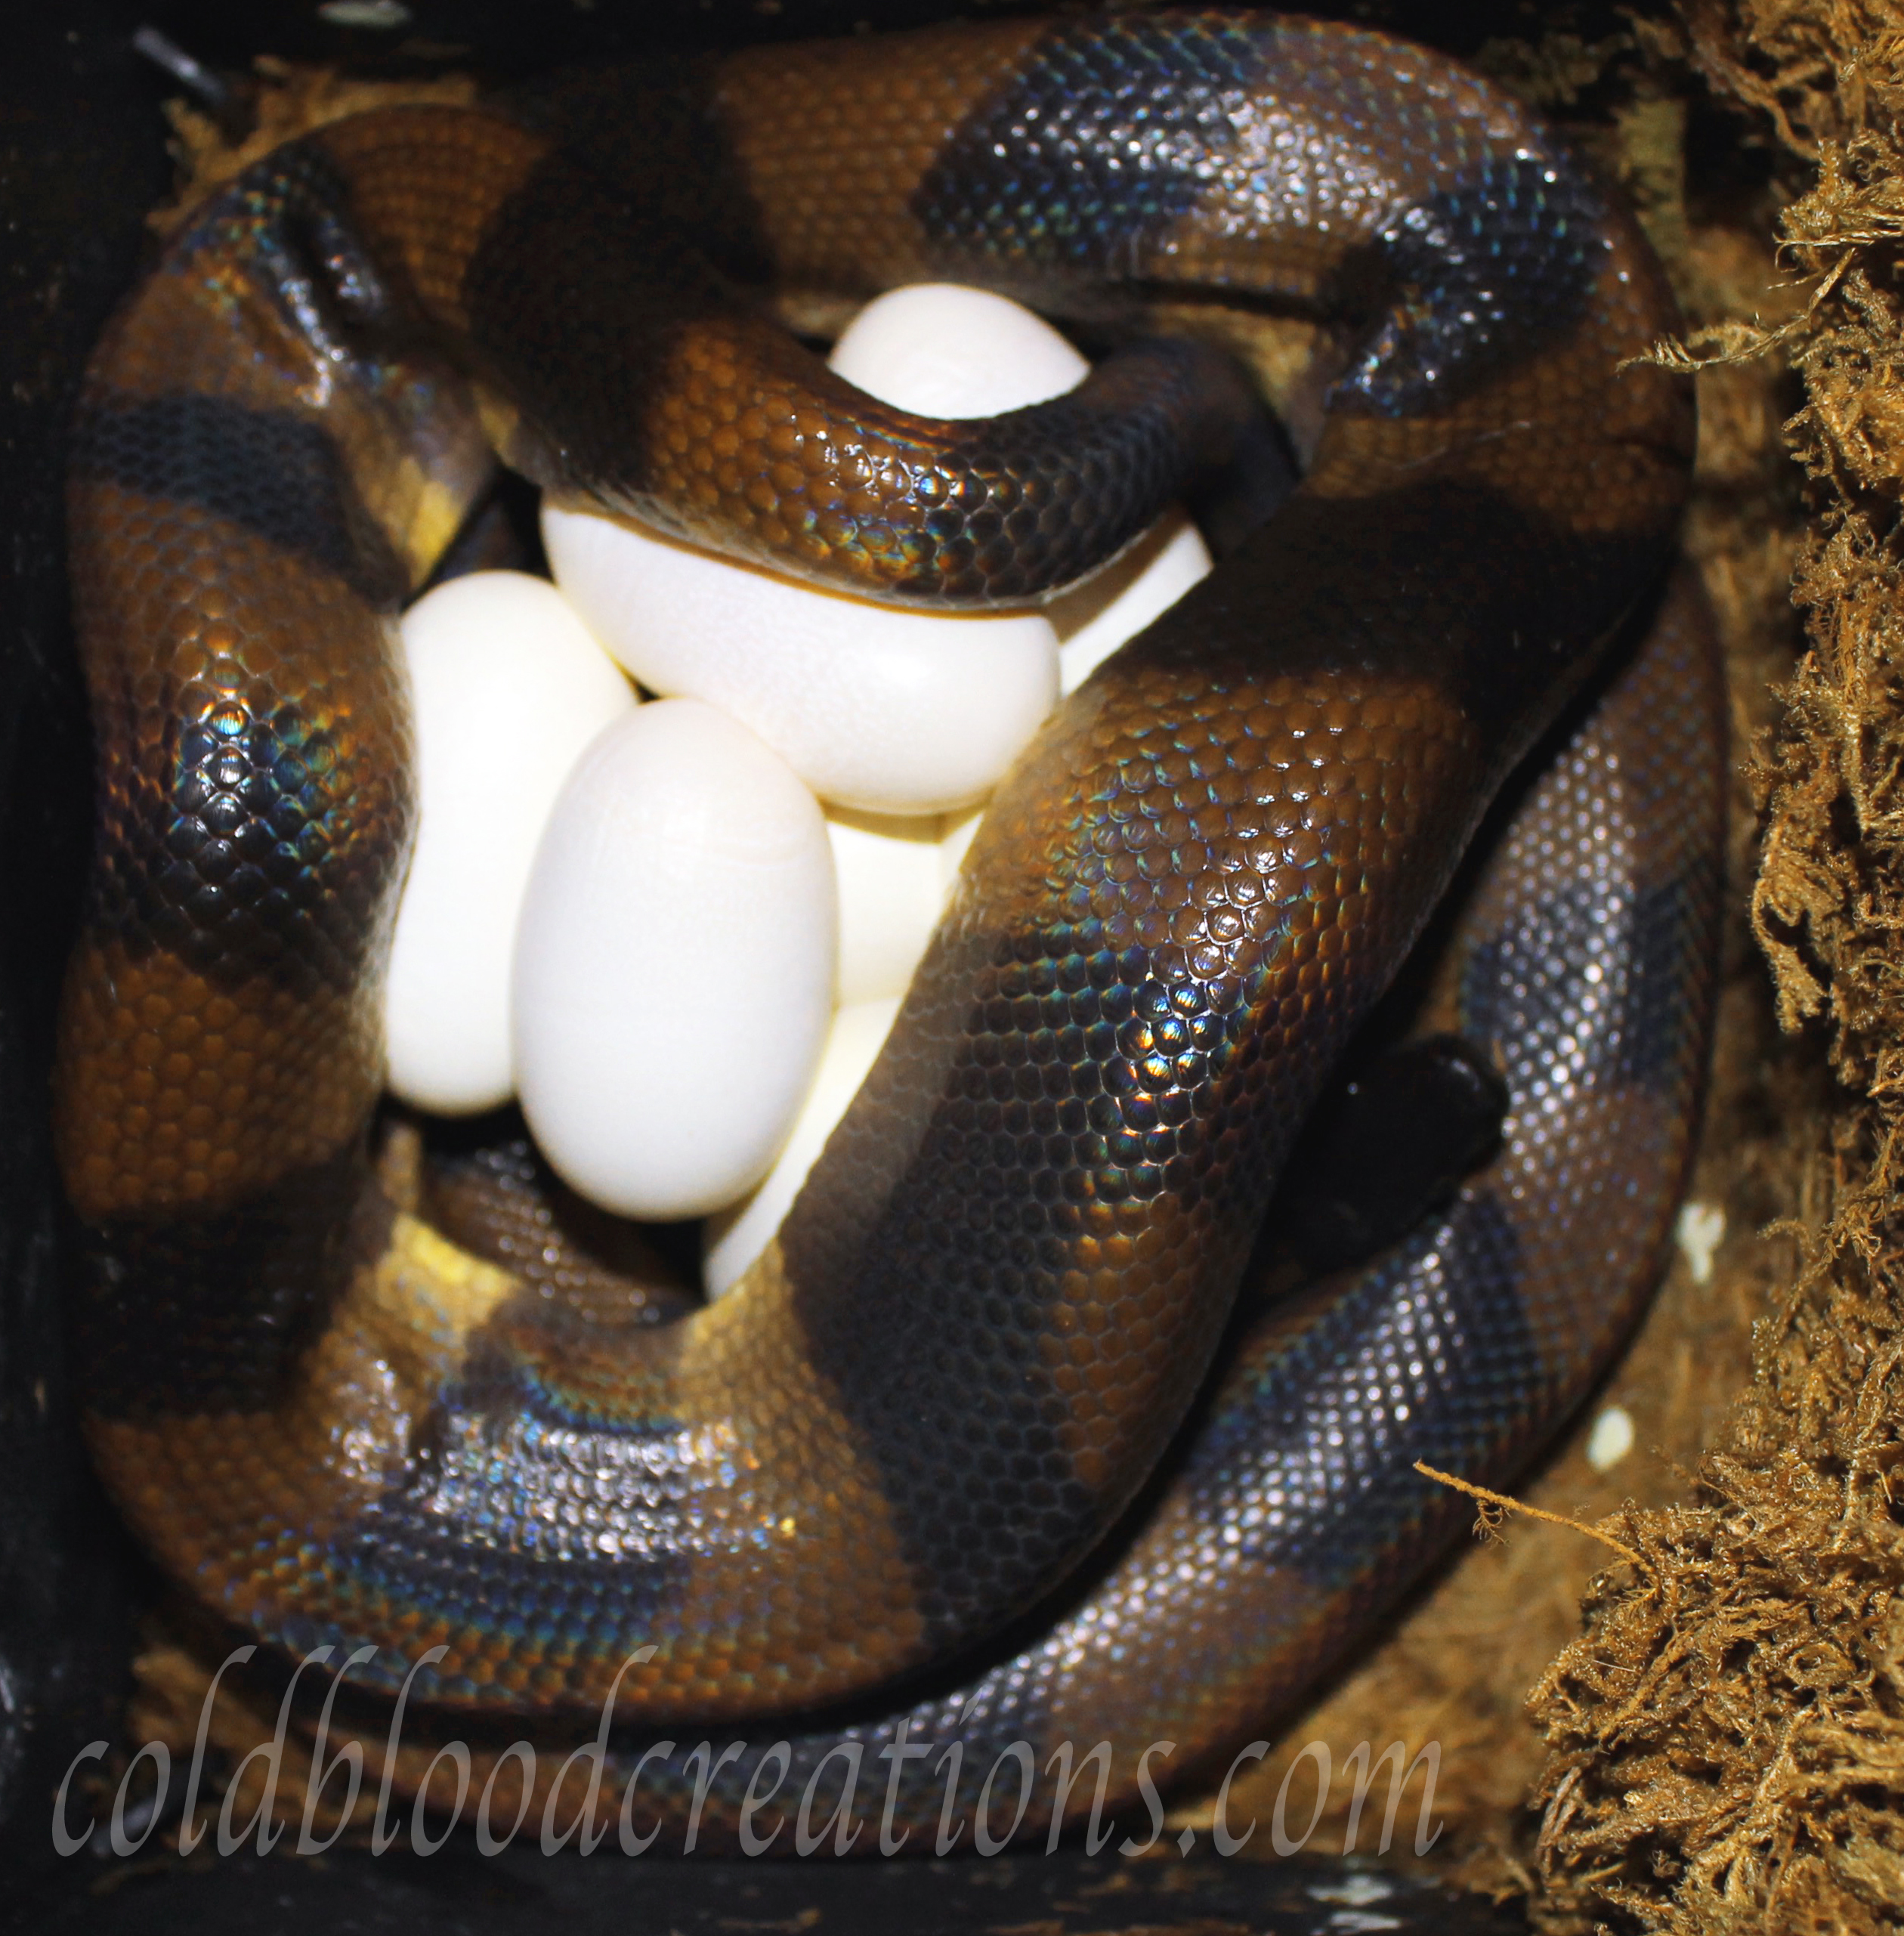 Bismarck ringed python, Bothrochilus boa laying eggs